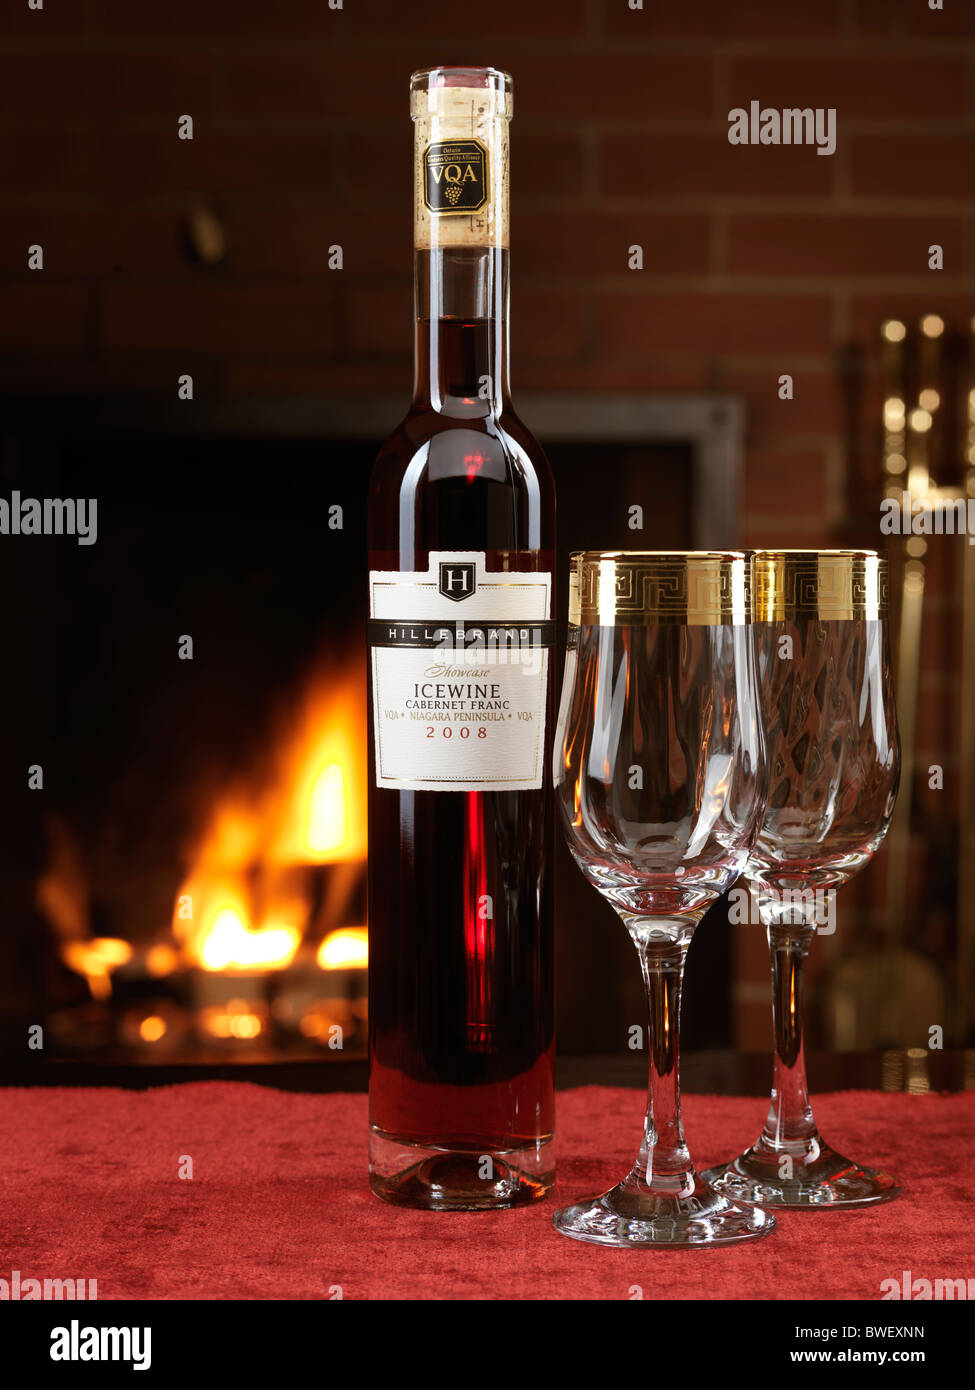 Bottiglia di Rosso Icewine Cabernet Franc da Hillebrand e due bicchieri di vino su una tabella con un camino in background Foto Stock